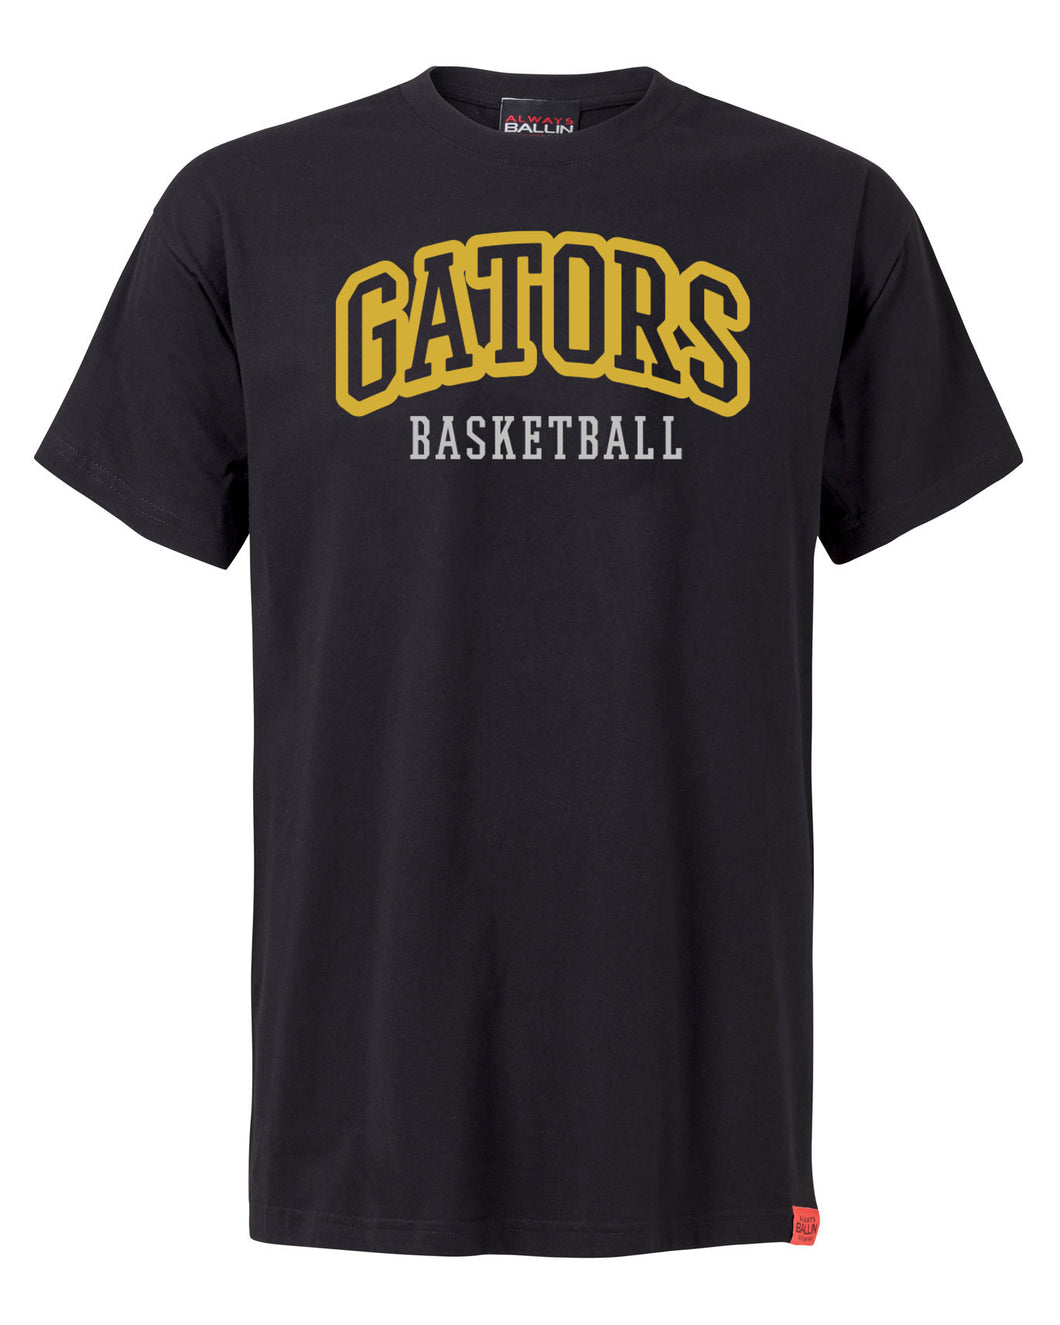 Chiswick Gators Basketball Adult Black T-Shirt